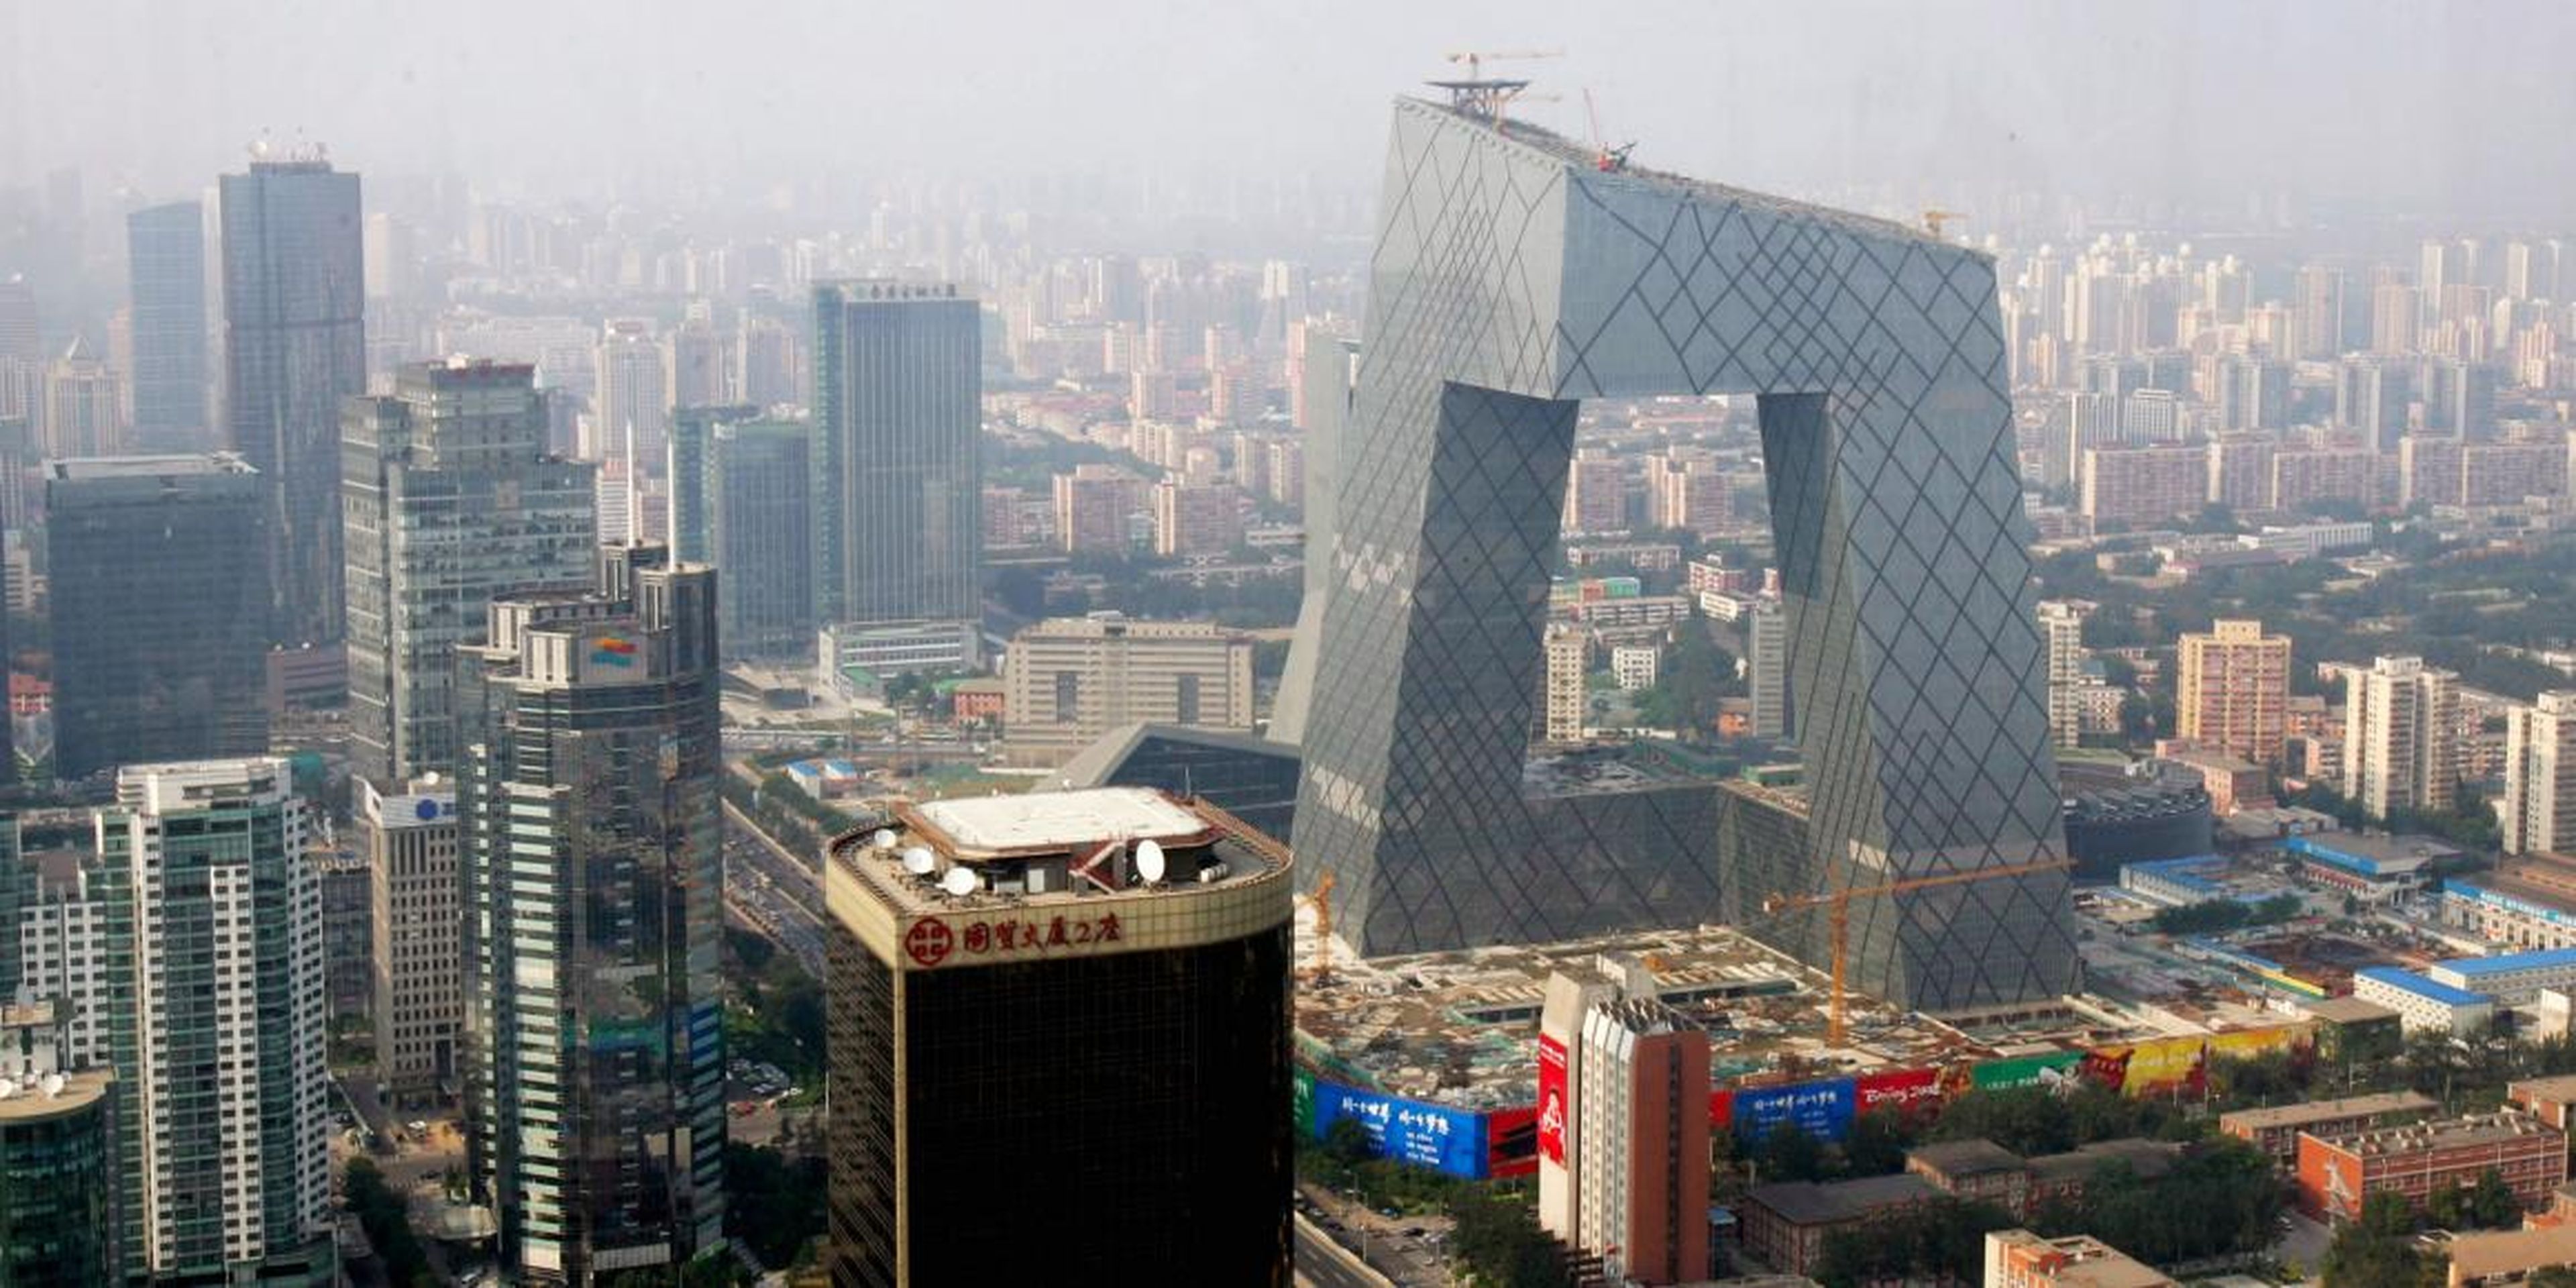 Hoy en día, se está construyendo en Pekín una de las obras modernas más impresionantes del mundo. Se trata de la Torre de CCTV, conocida popularmente como "Los Pantalones".